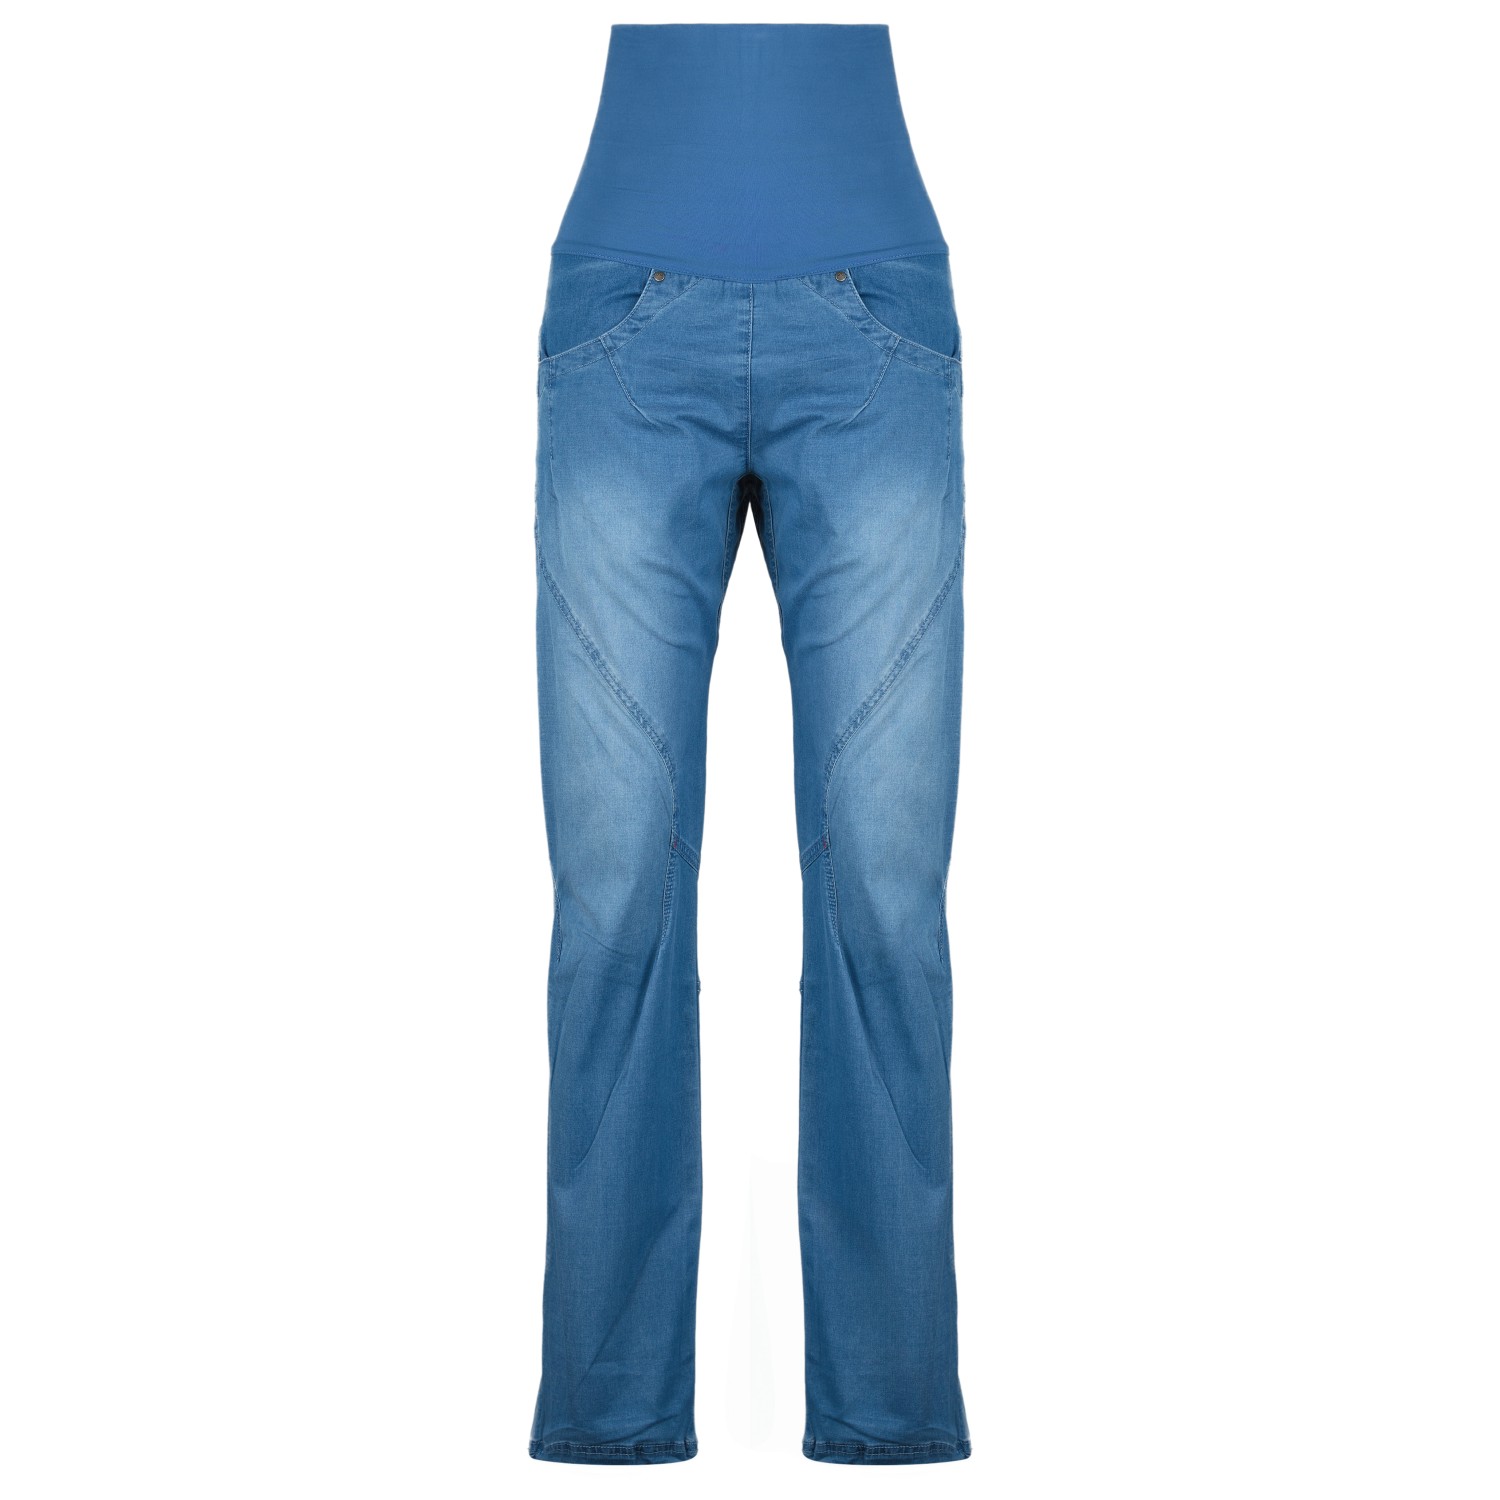 Альпинистские штаны Ocun Women's Noya Jeans, цвет Middle Blue ocun брюки noya жен l tall magnet